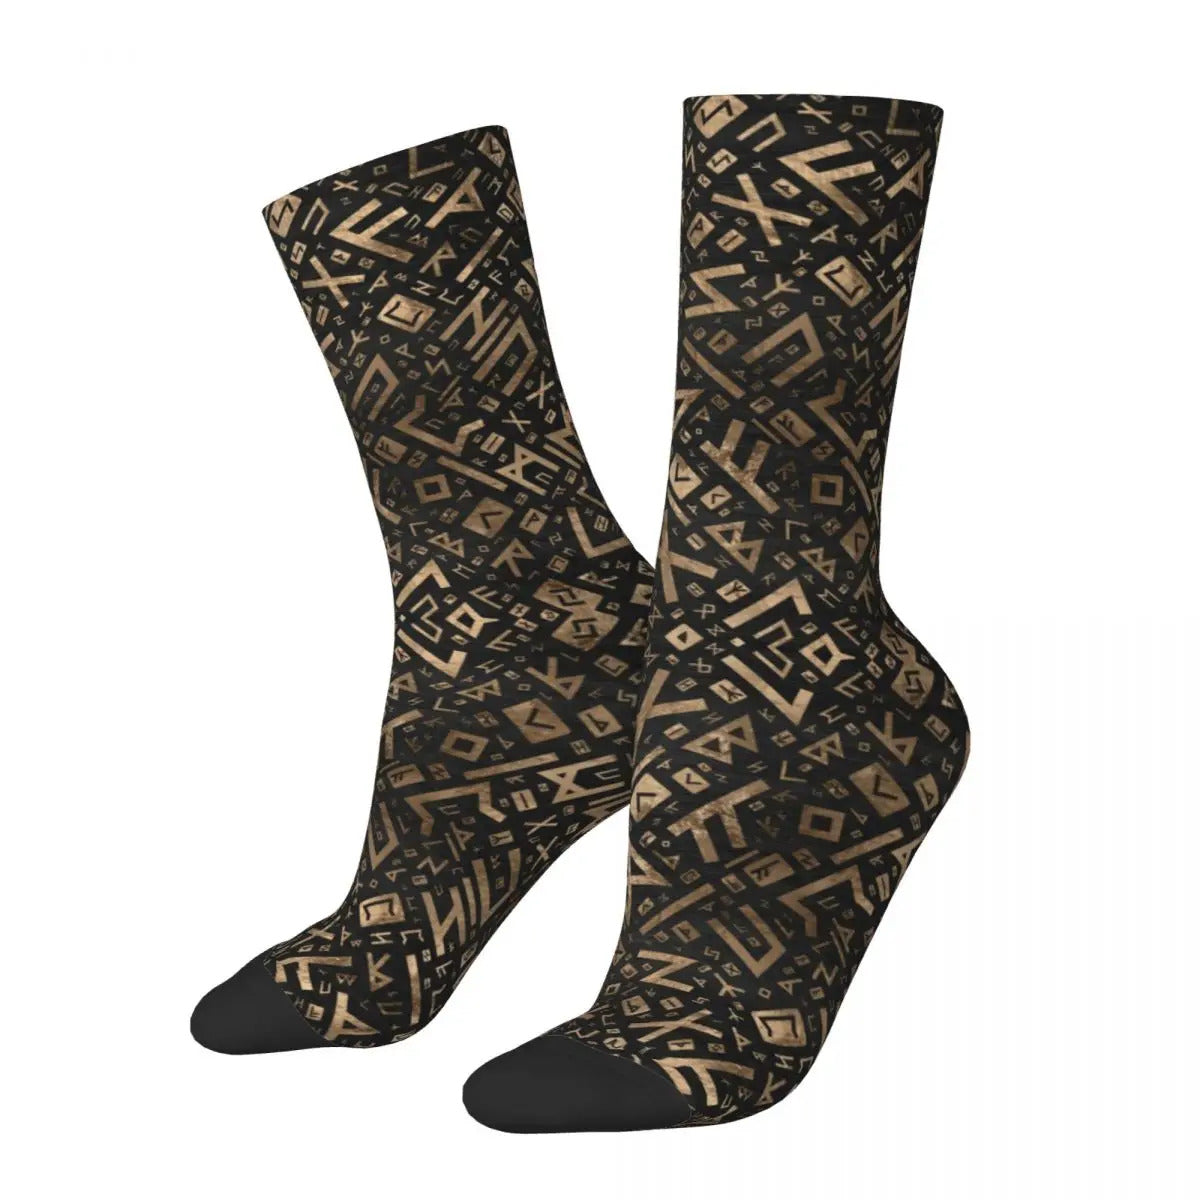 Limited Edition Vikings Socks